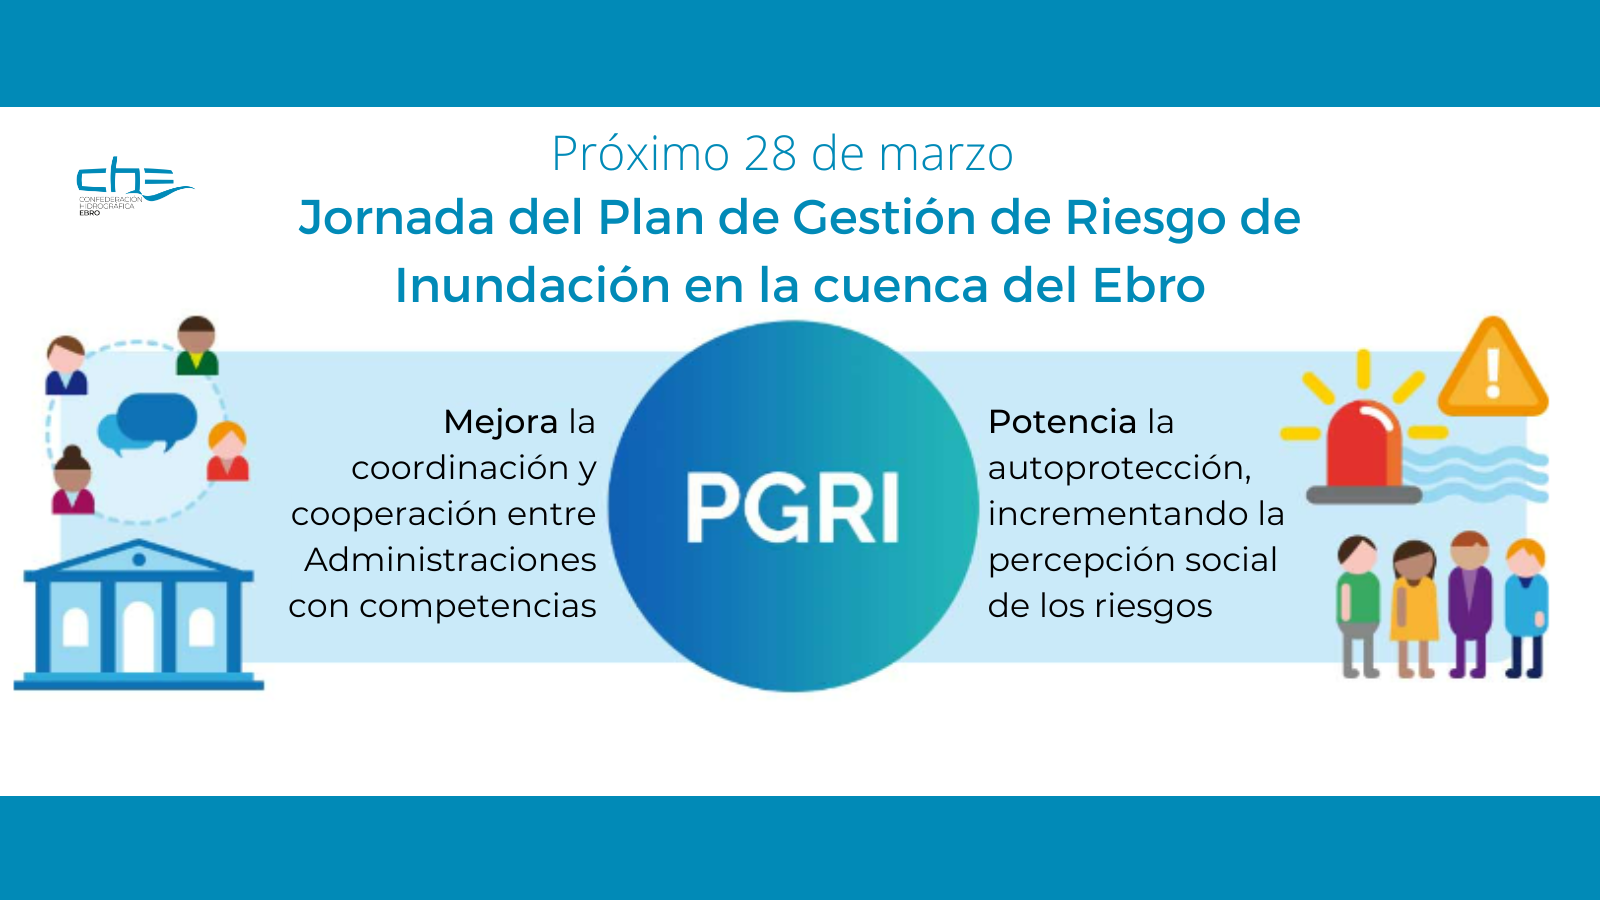 Imagen noticia - Jornada de presentación del Plan de Gestión del Riesgo de Inundación de la cuenca del Ebro